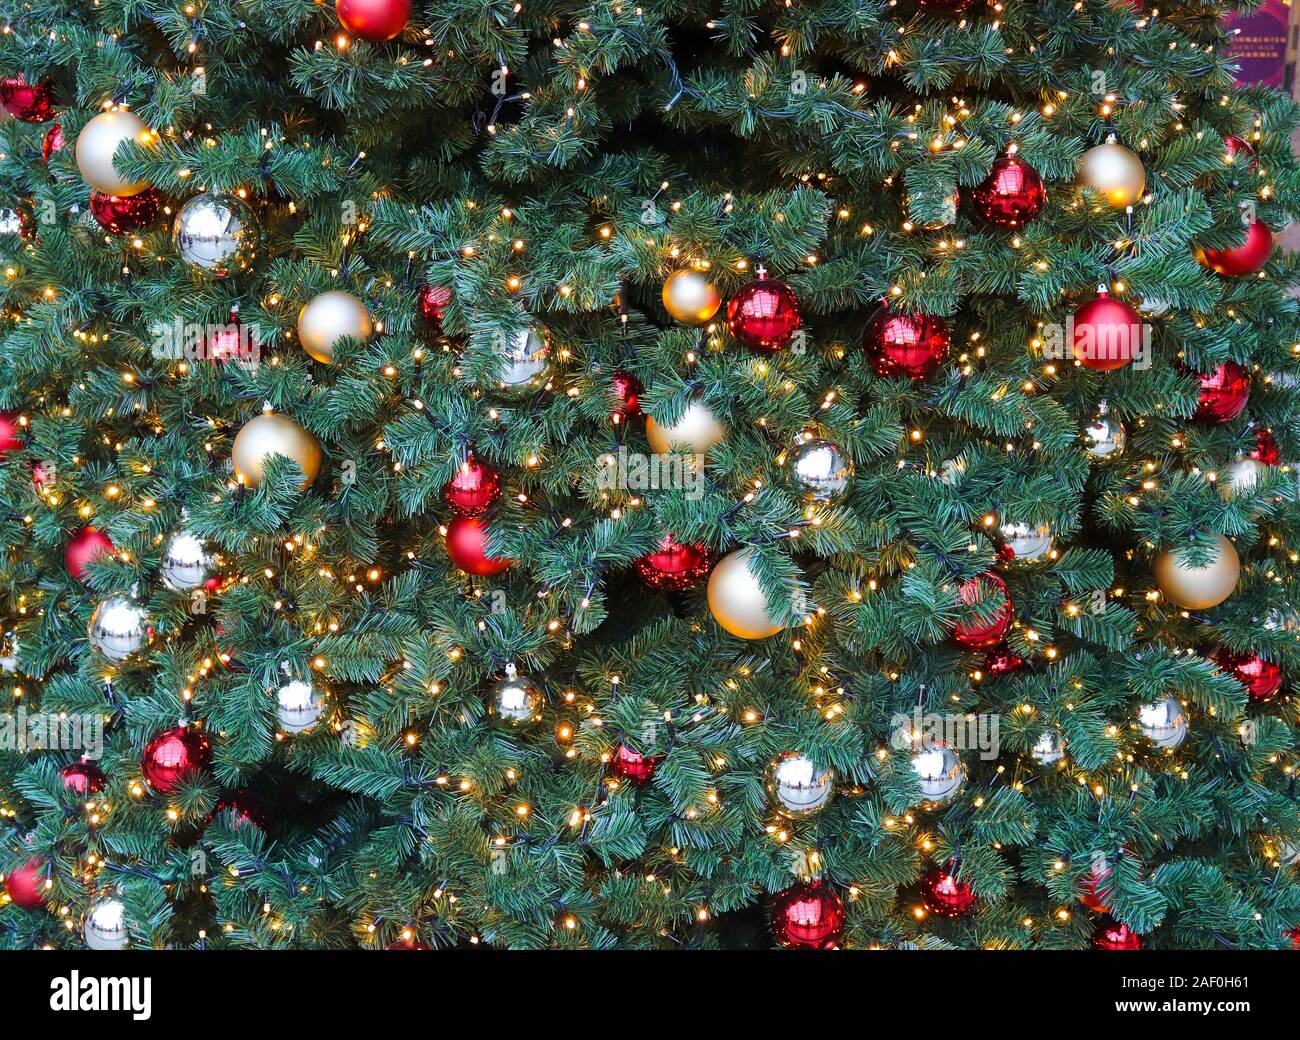 Hermoso color rojo dorado y decoración de Navidad en un árbol de pino verde  Fotografía de stock - Alamy